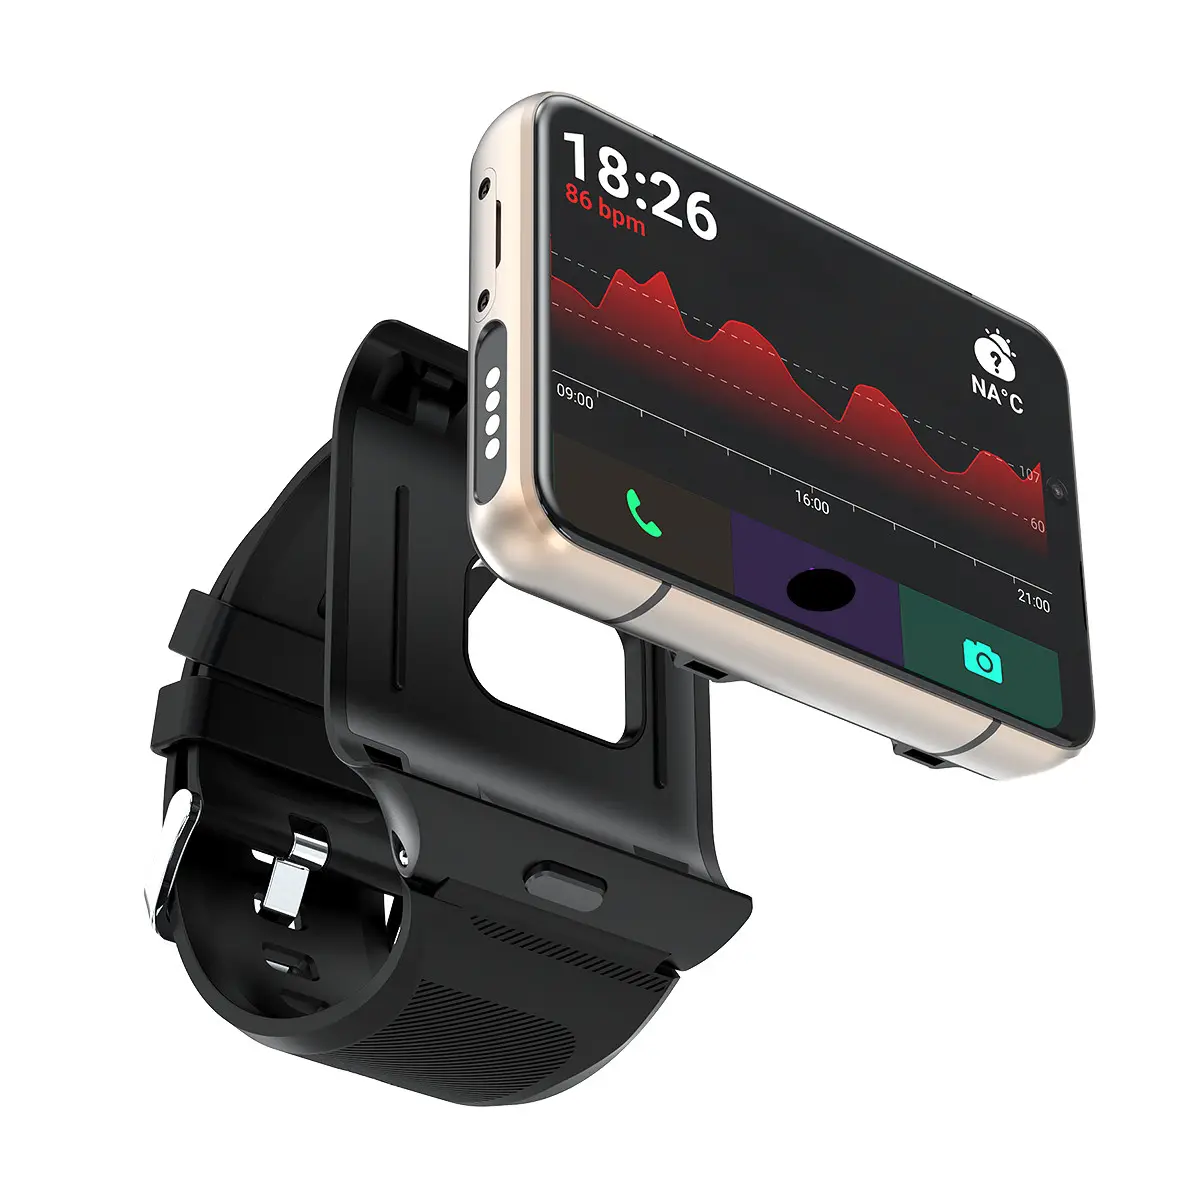 OEM S999 relógio inteligente, câmera dupla 2300mah bateria 2.88 "hd grande tela cartão SIM inteligente 4g relógio telefone para android relógio inteligente